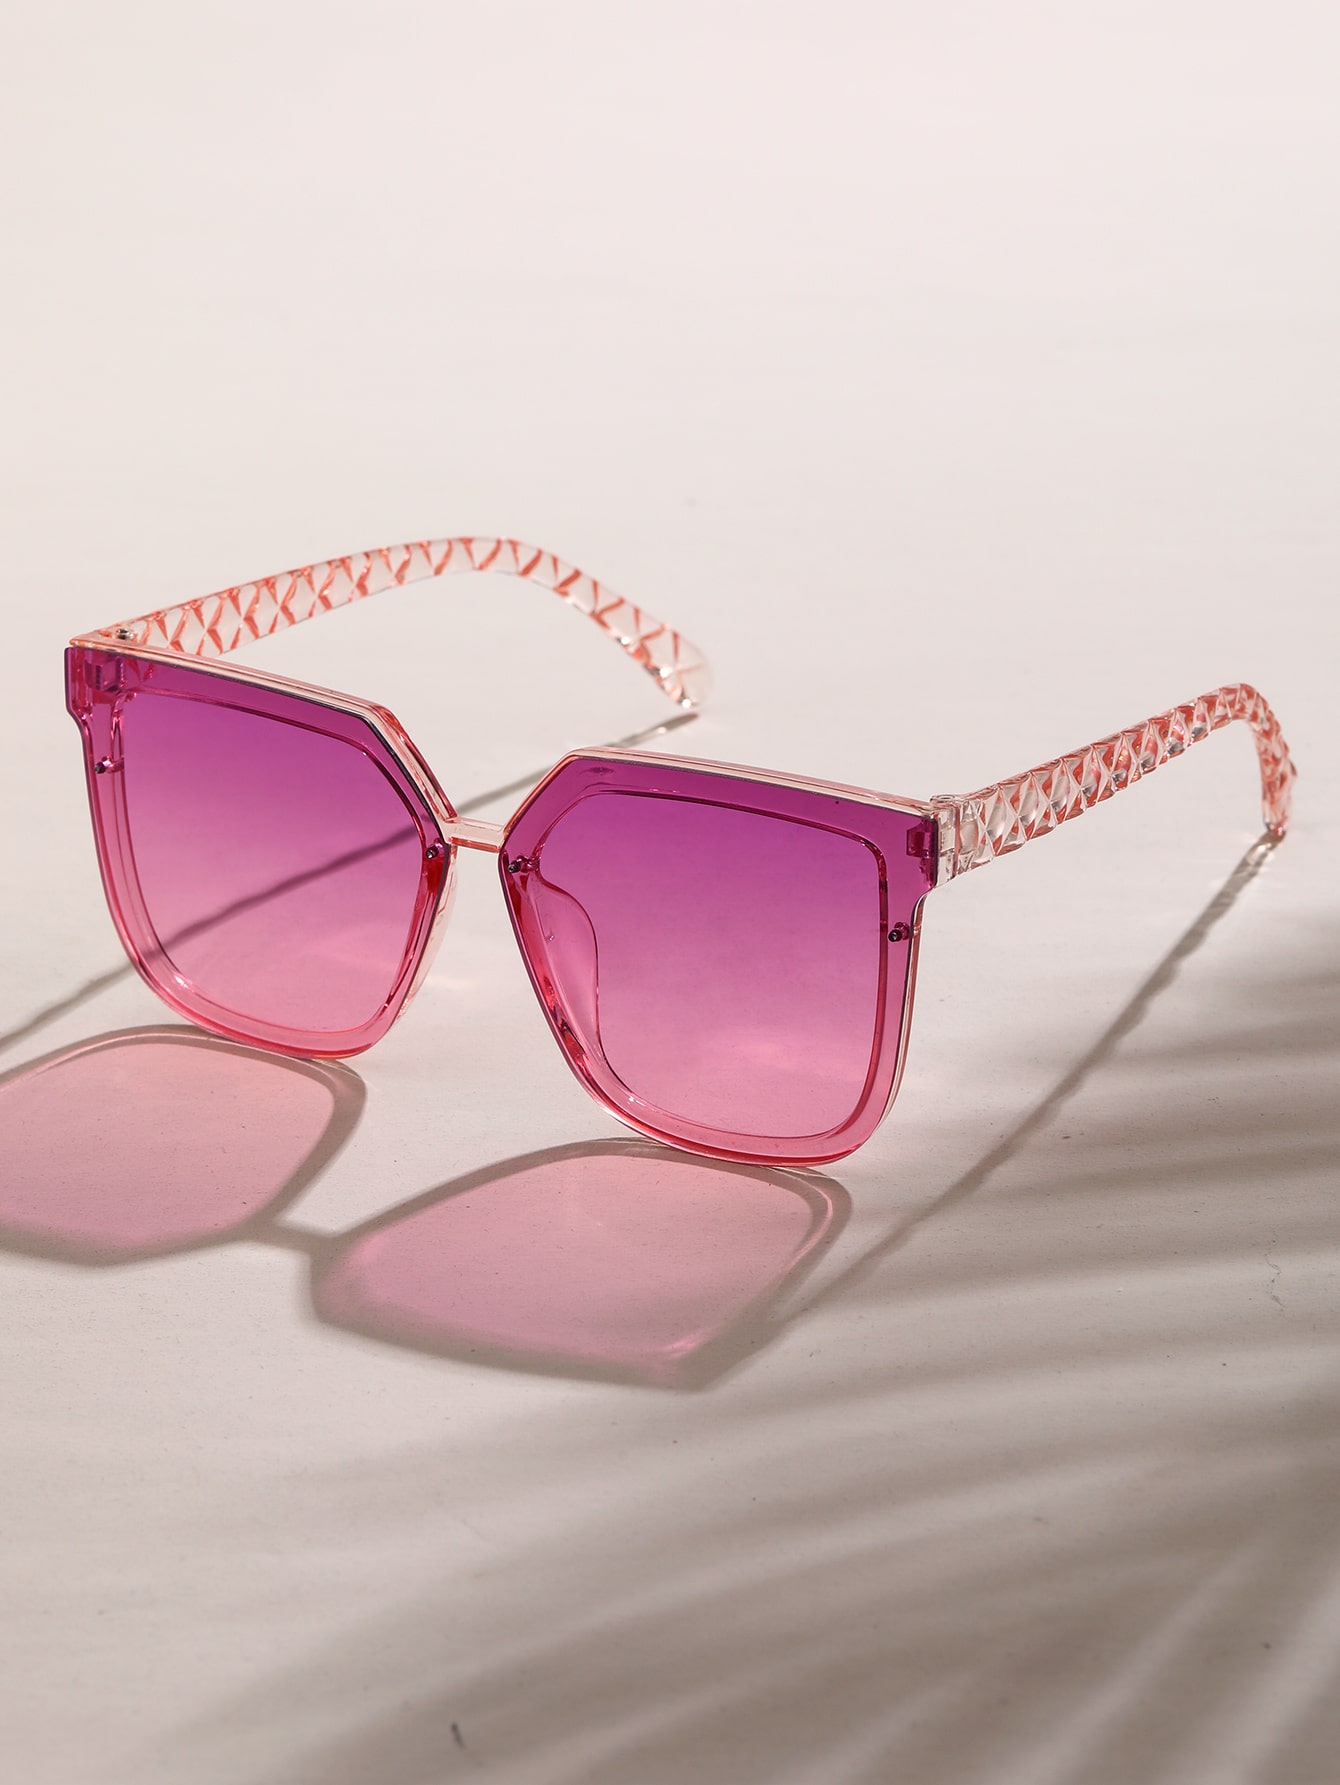 1 шт. женские квадратные пластиковые индивидуальные солнцезащитные очки в стиле бохо для вождения